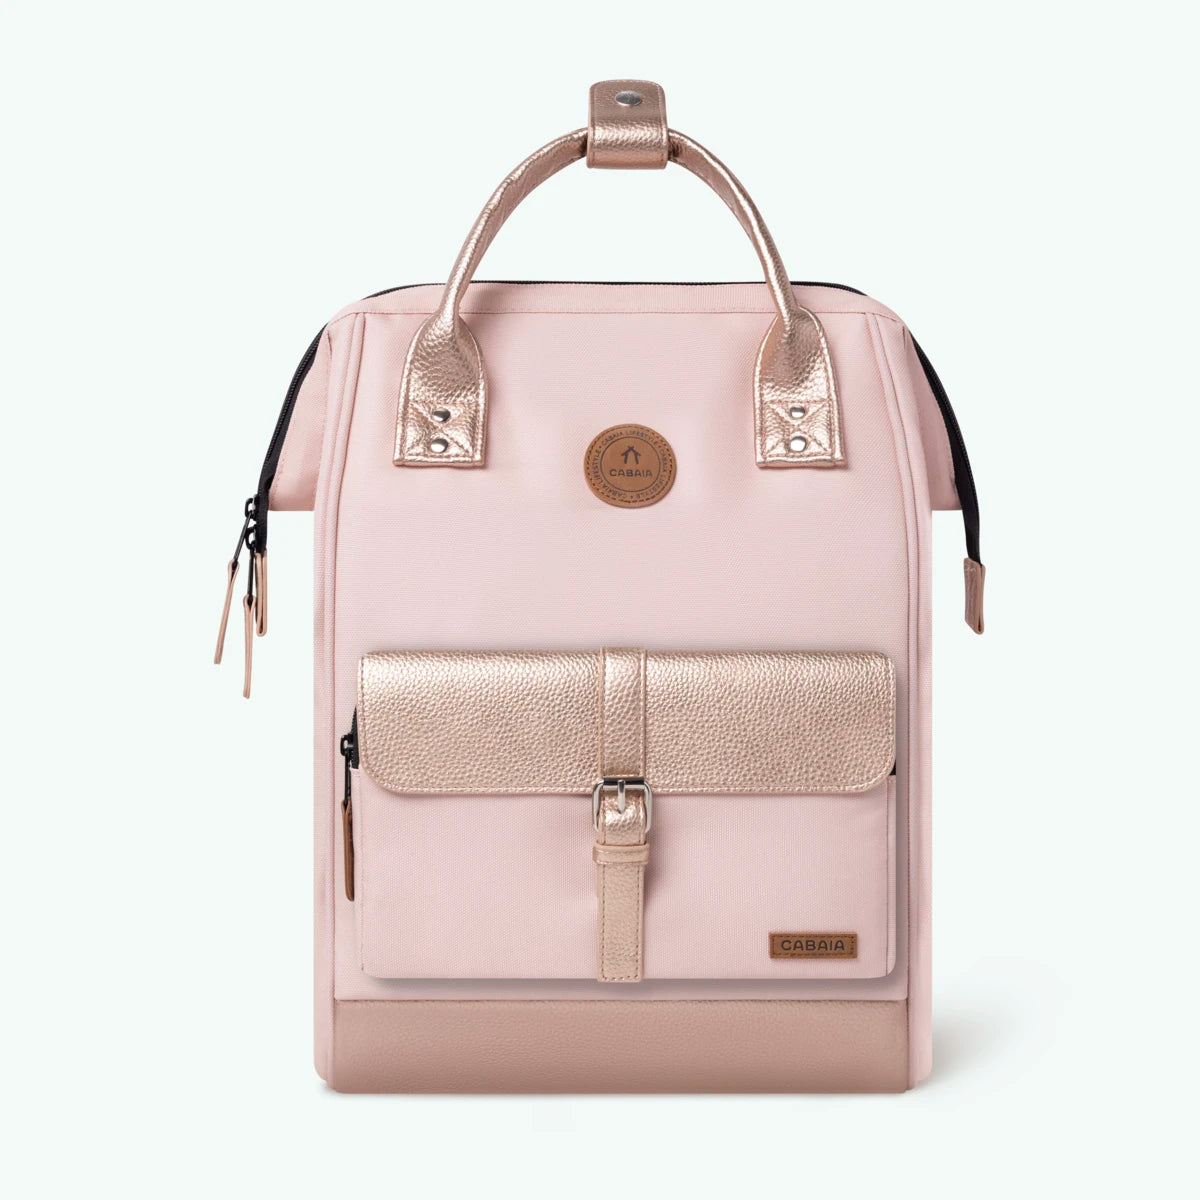 adventurer-pink-medium-backpack-1-pocket